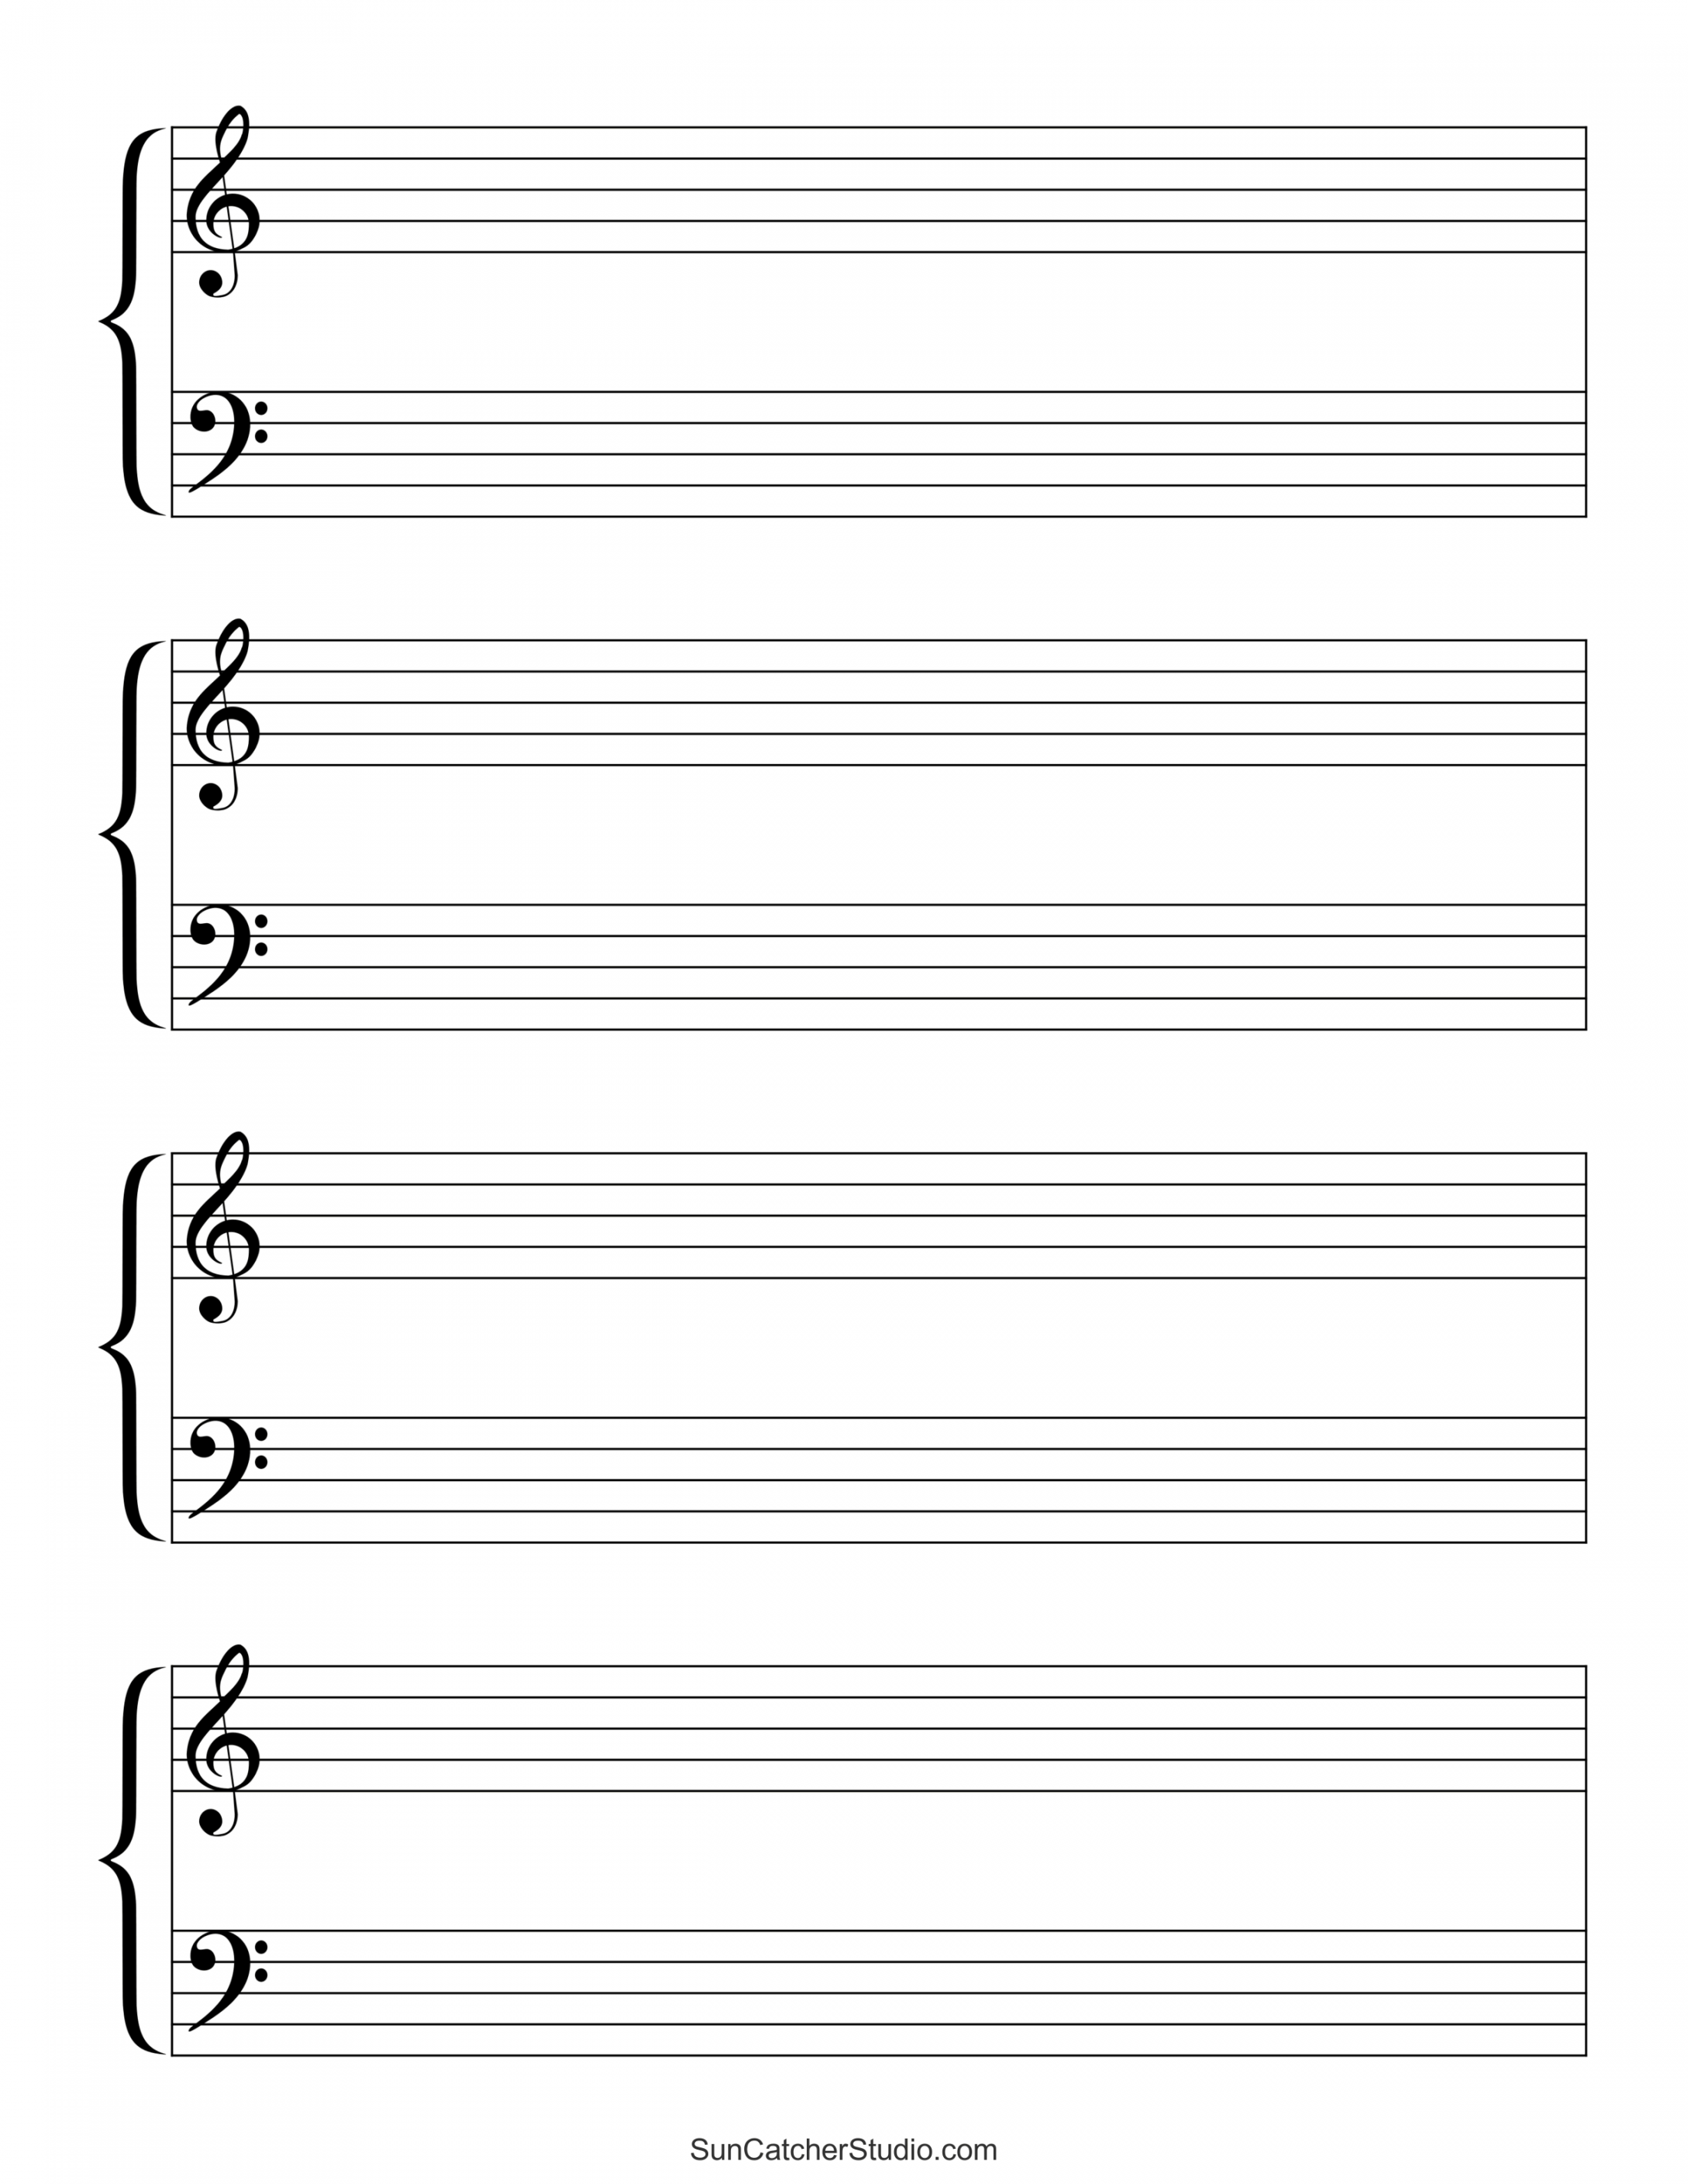 Free Printable Music Sheets - Printable - Blank Sheet Music (Free Printable Staff Paper) – DIY Projects